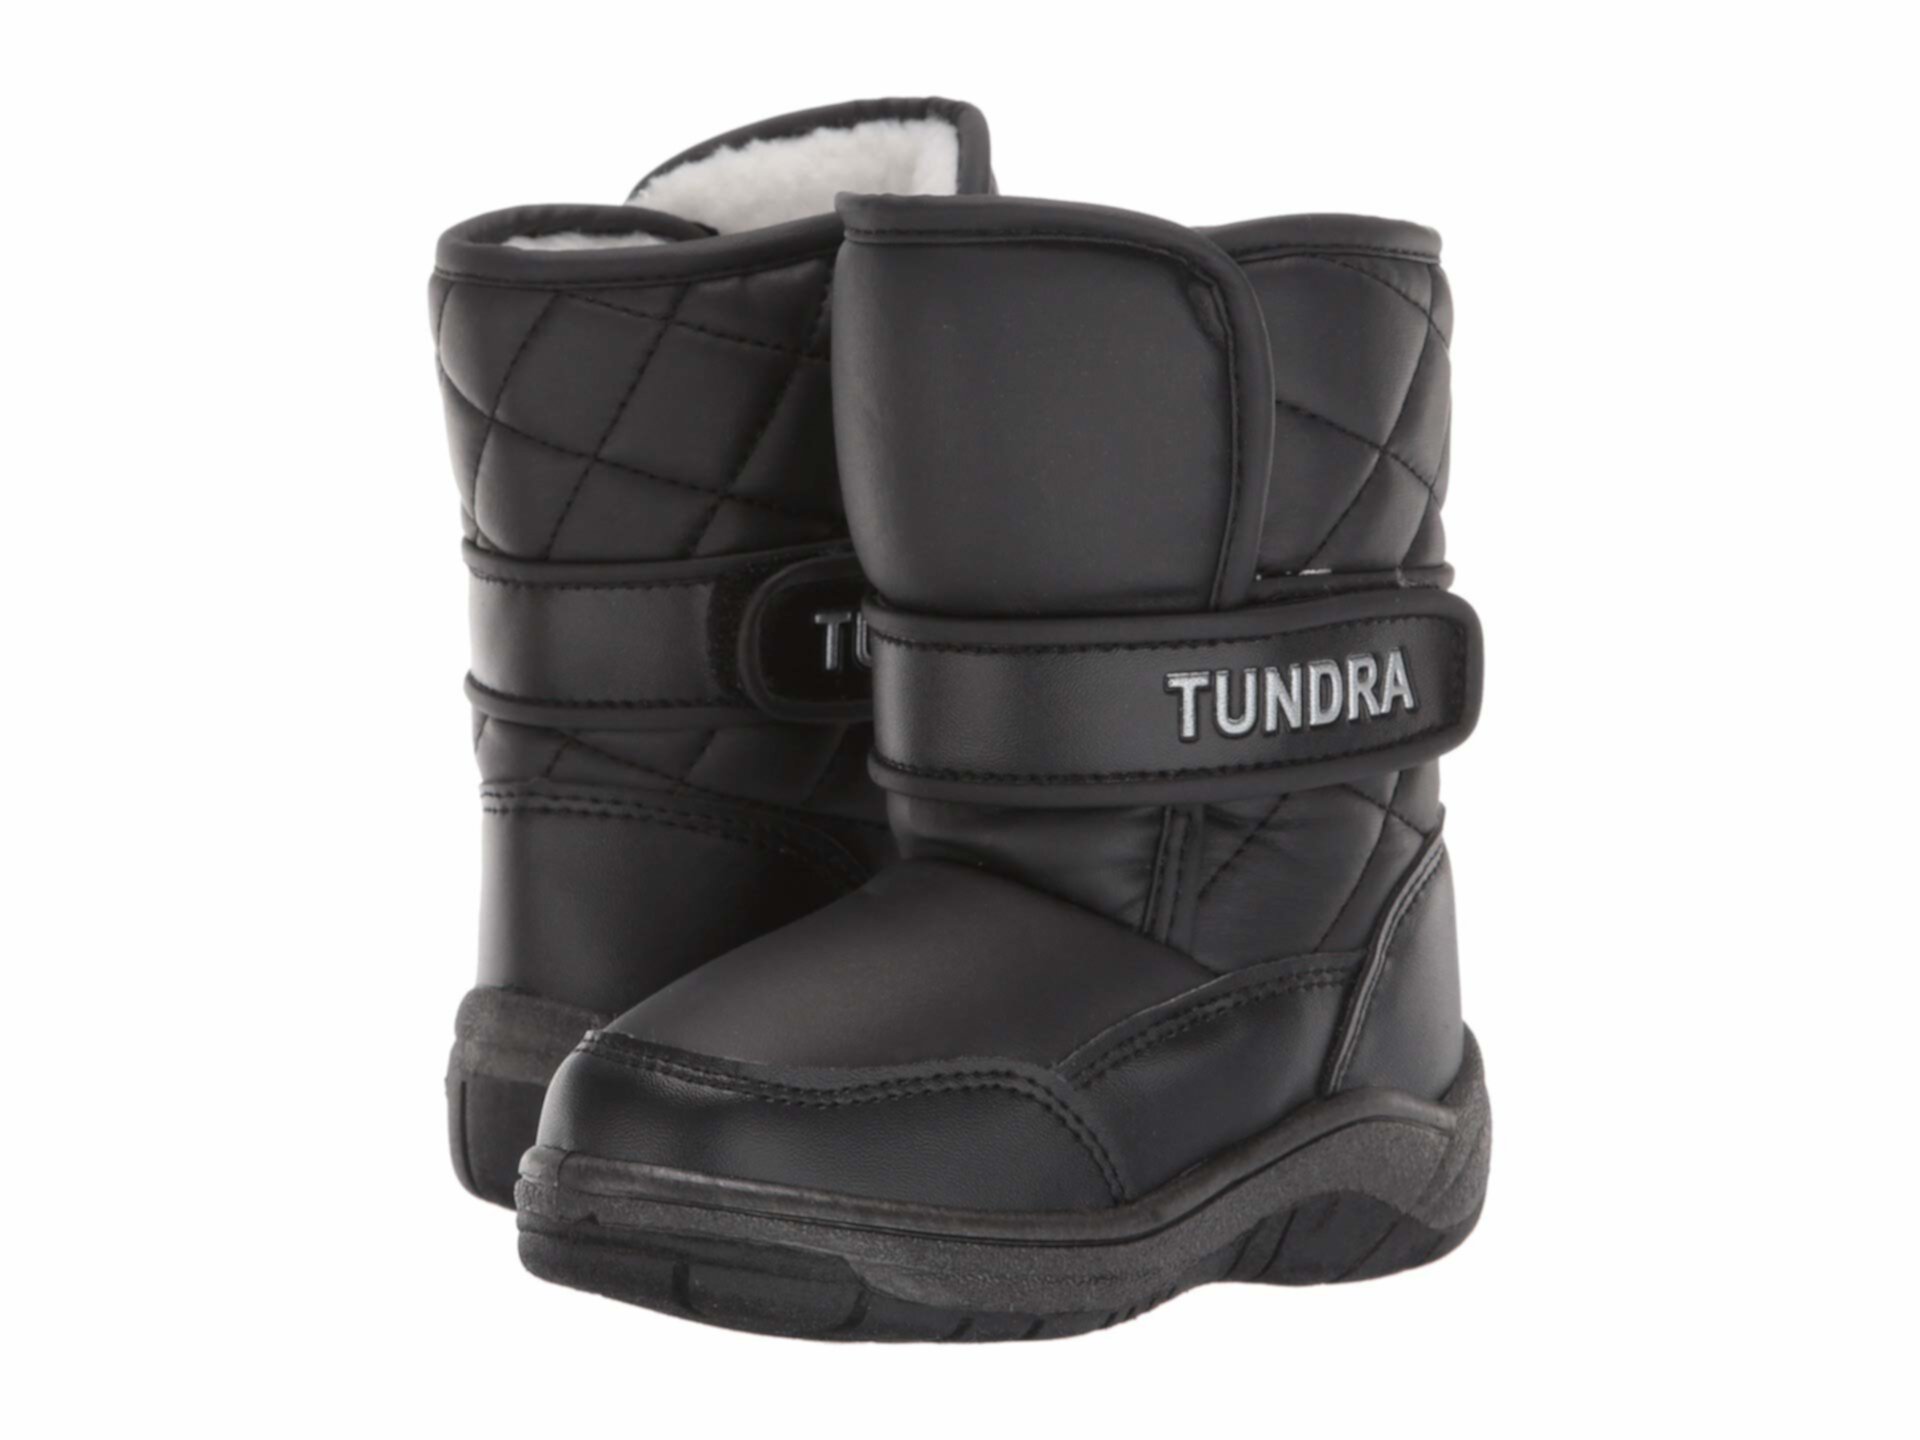 Ледяная шапка (Малыш) Tundra Boots Kids